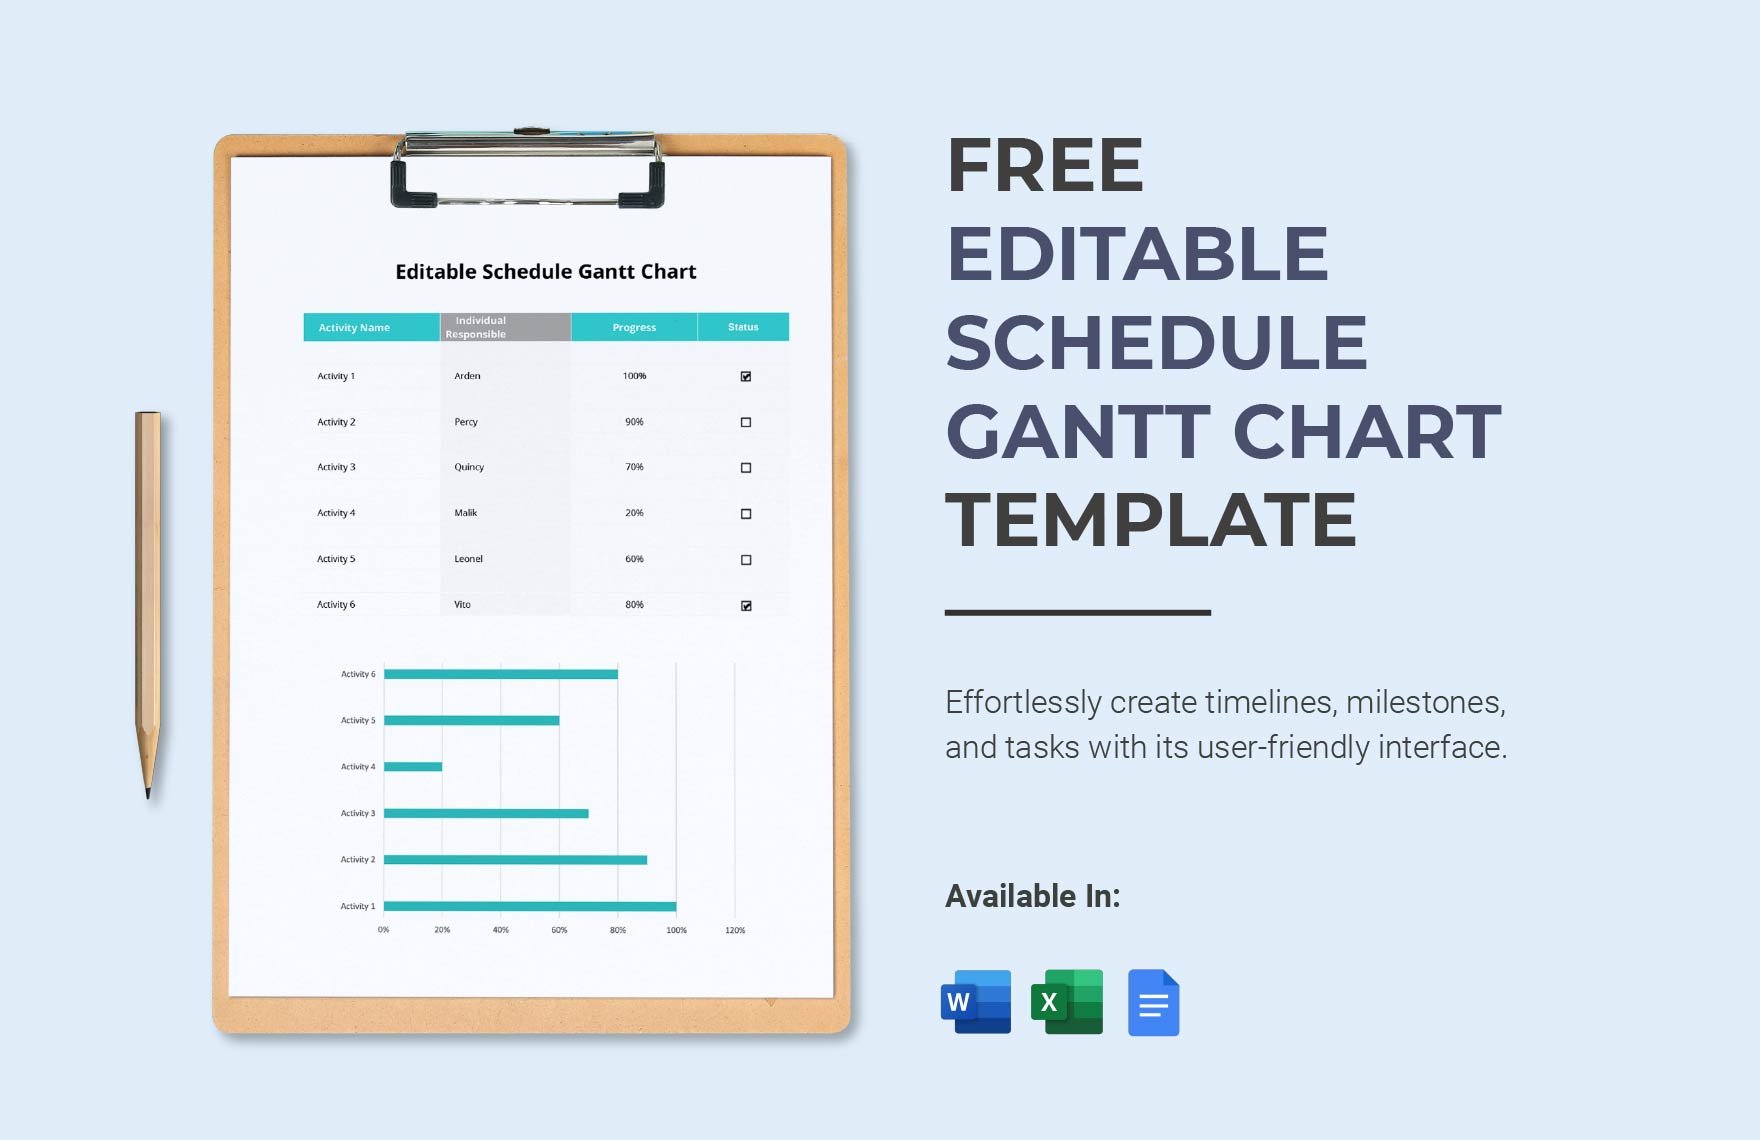 Editable Schedule Gantt Chart Template in Word, Google Docs, Excel